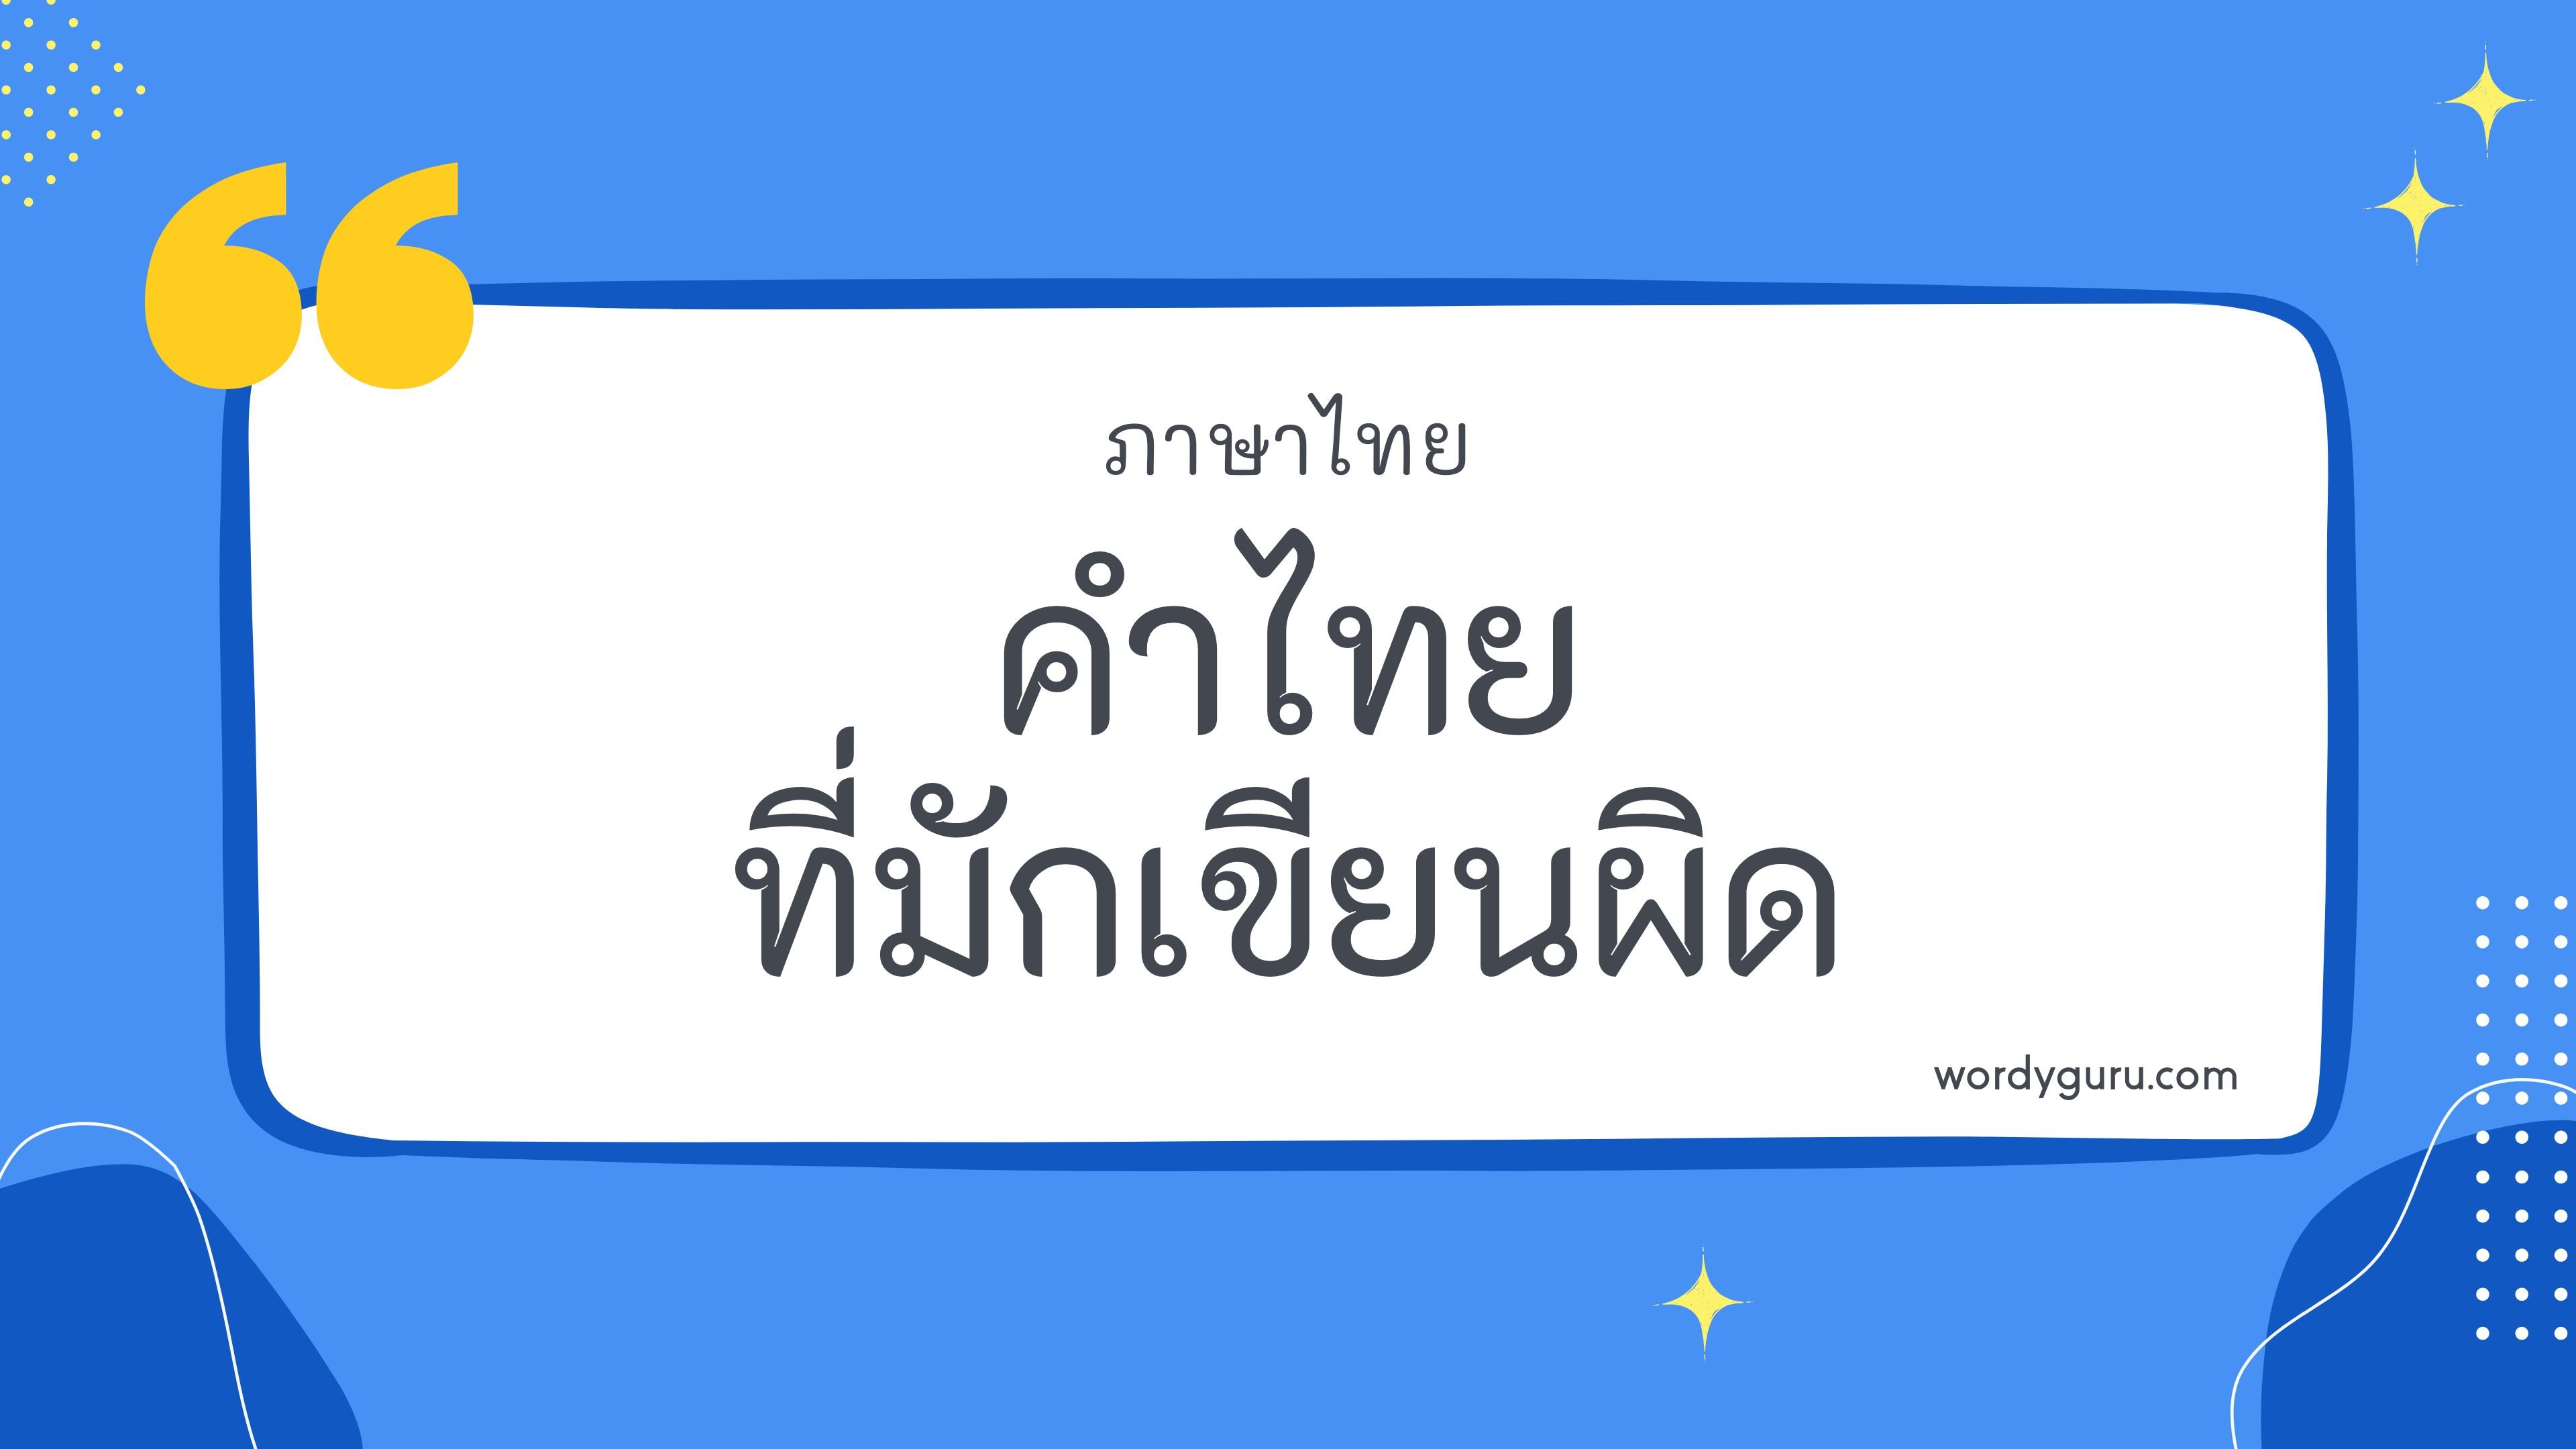 คำไทยที่มักเขียนผิด หมวด ล ตามที่เคยรู้จัก คำในภาษาไทยที่มักเขียนผิด มีอยู่หลายคำ จะมีคำไหนที่เรารู้จักไหมนะ